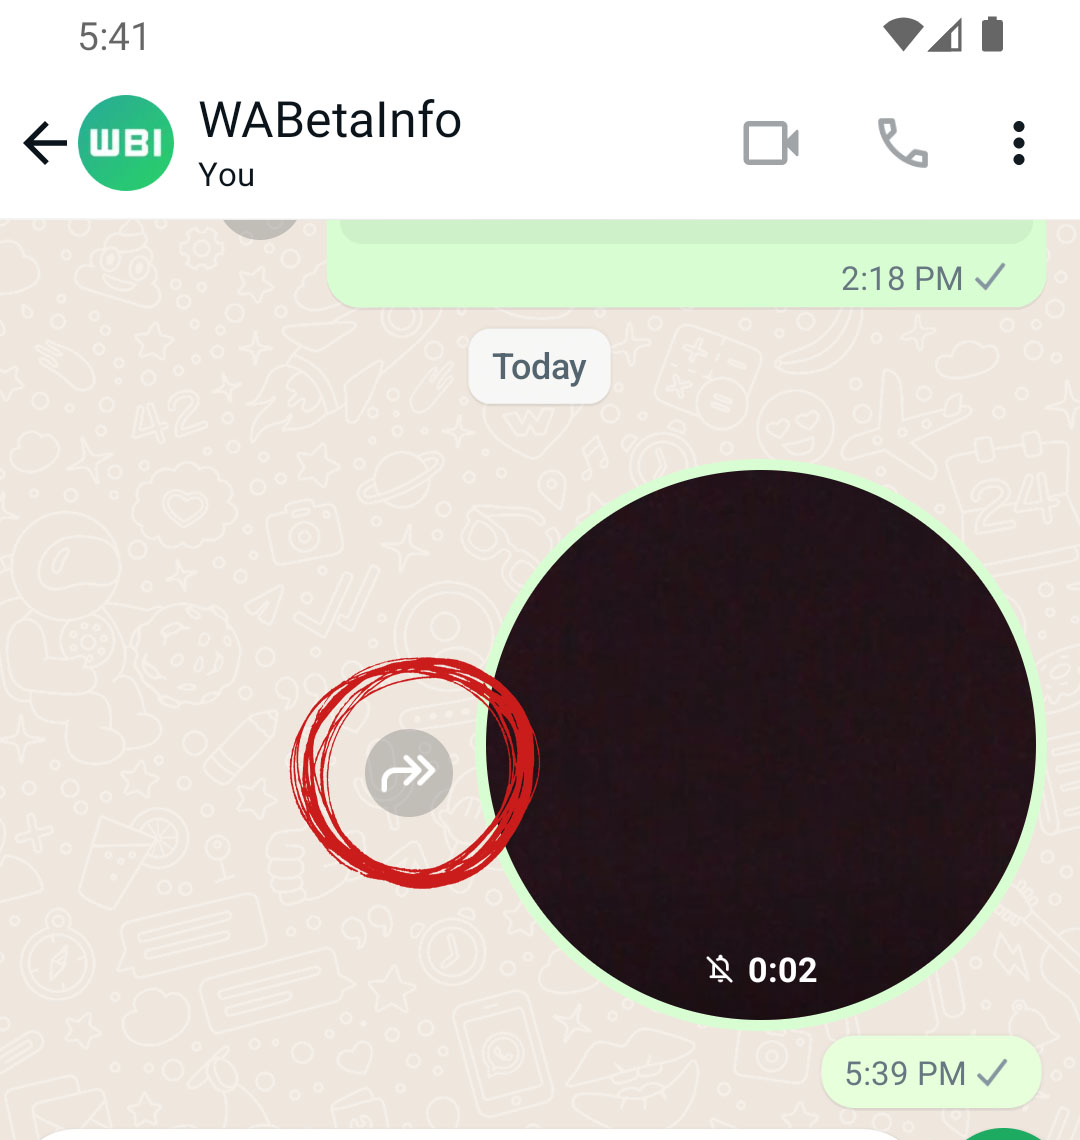 WhatsApp, Güvenlik Amacıyla Kullanıma Sunduğu "Video Mesaj" Özelliğine Başkasına Gönderme Özelliği Getiriyor